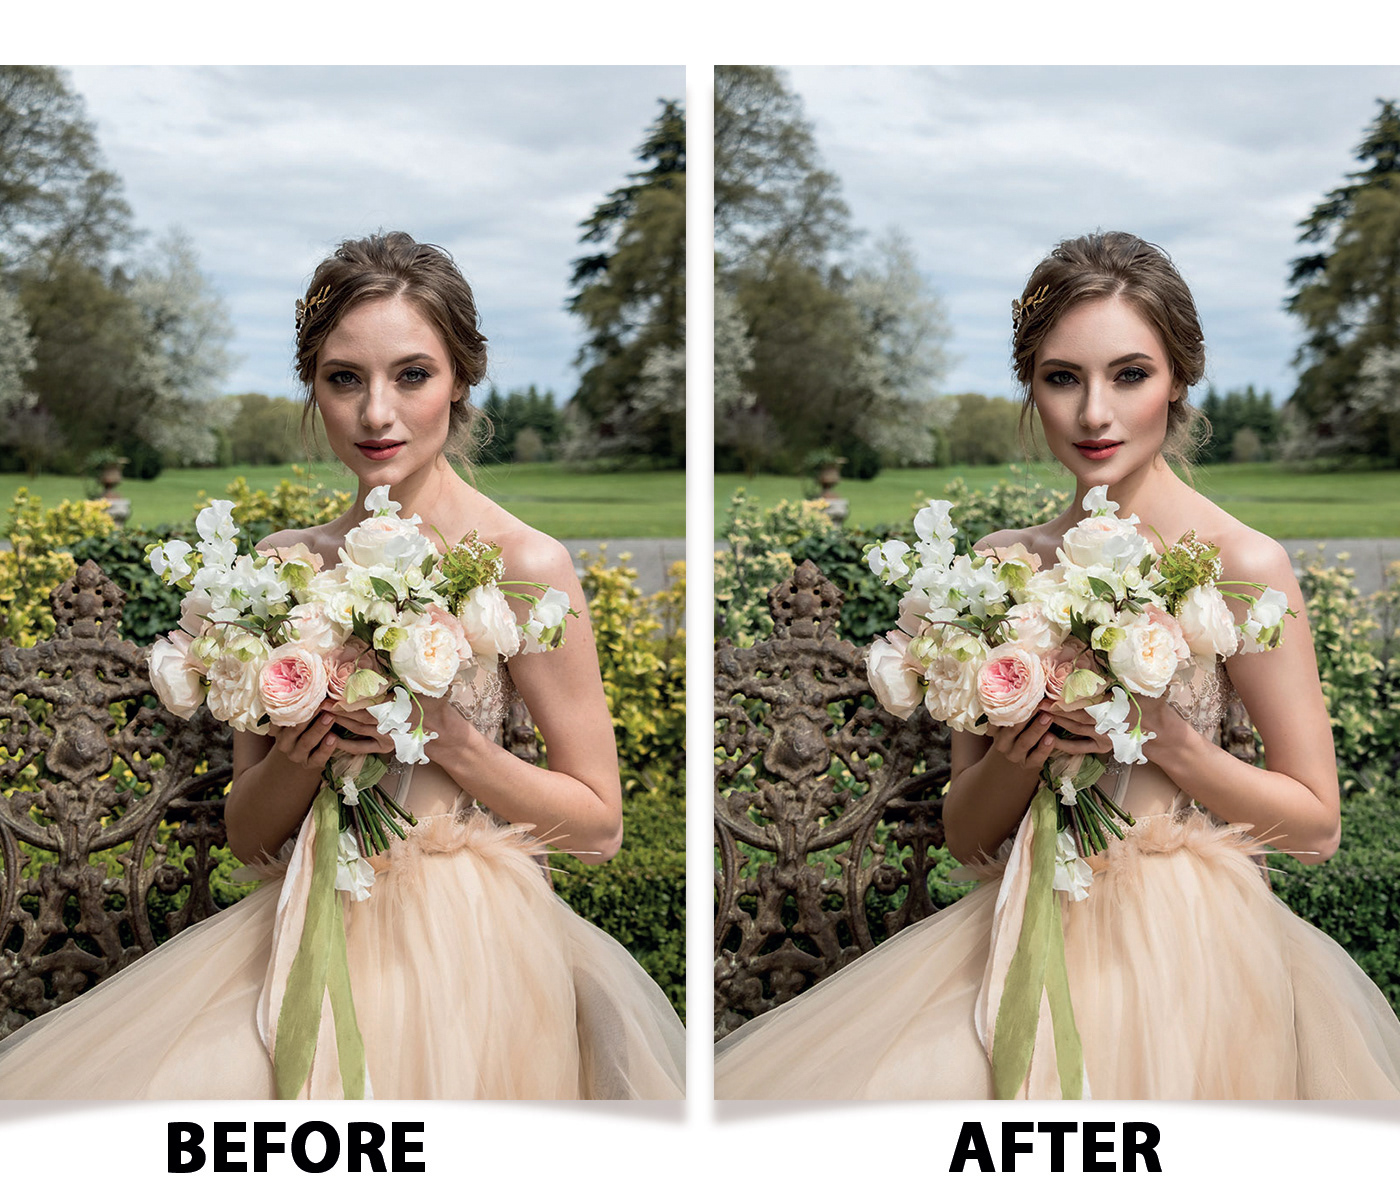 Wedding Photography wedding retouchig enhancement photo editing Adobe Photoshop